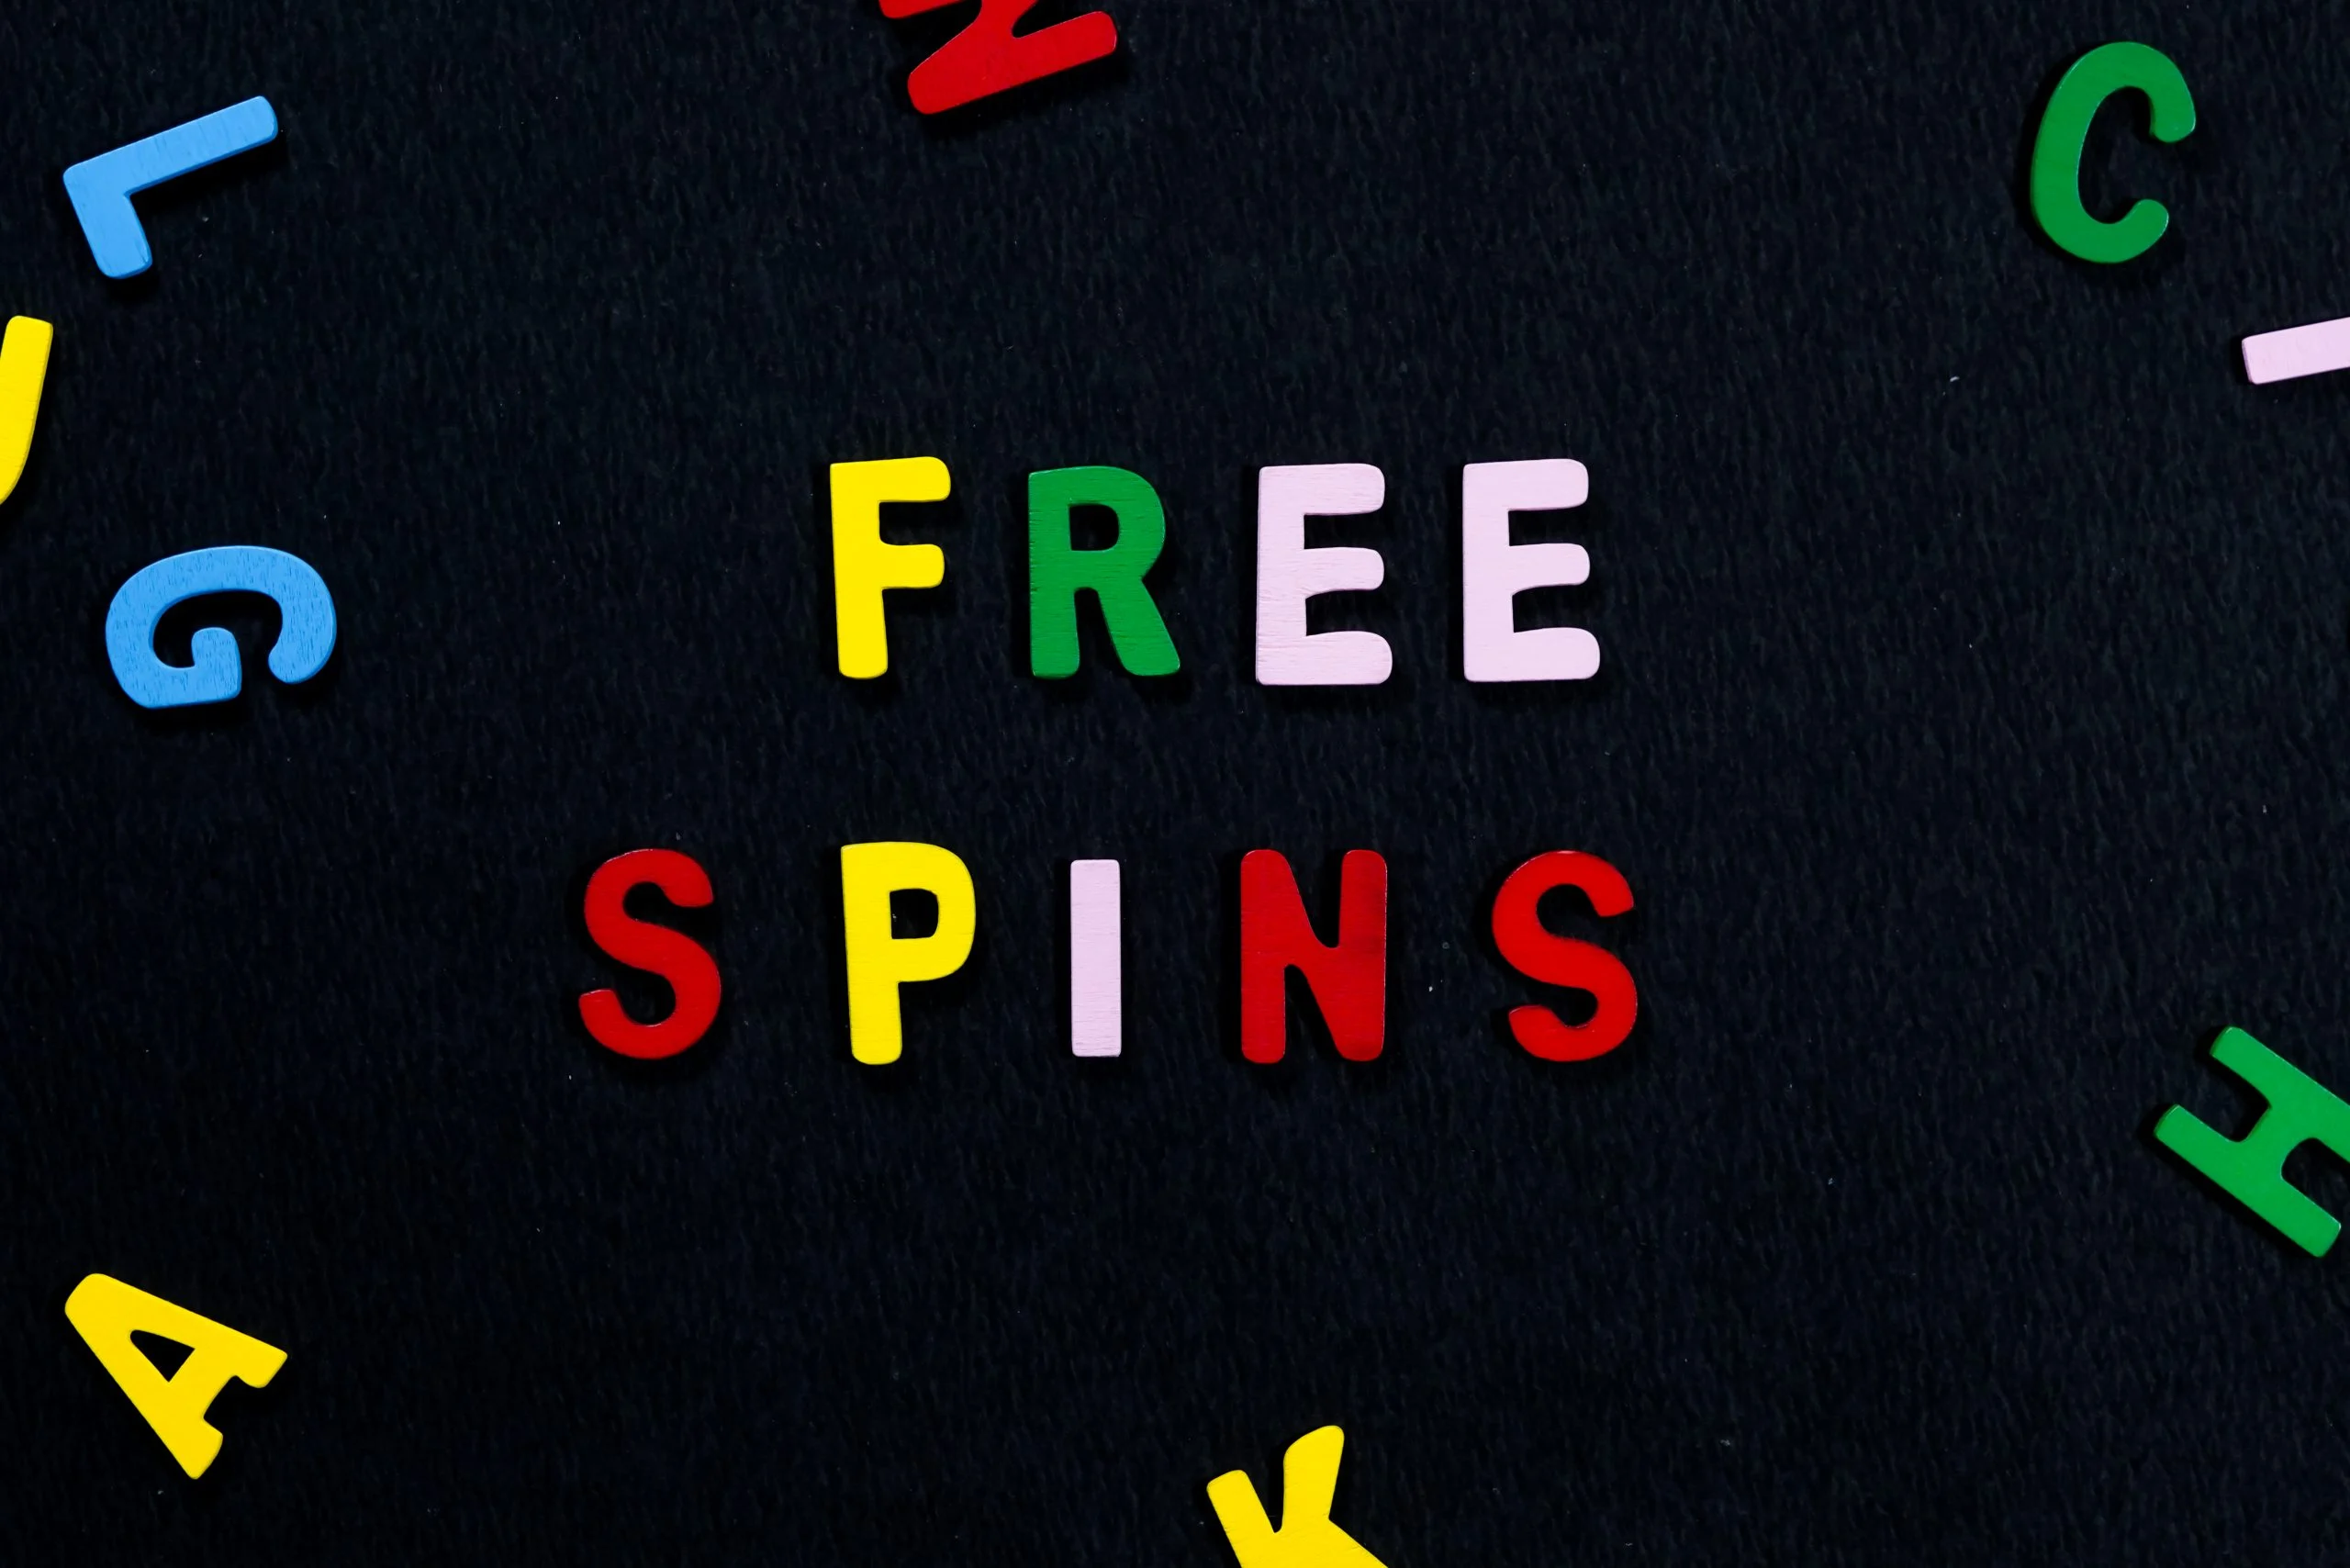 Free spins - otočky zdarma bonus